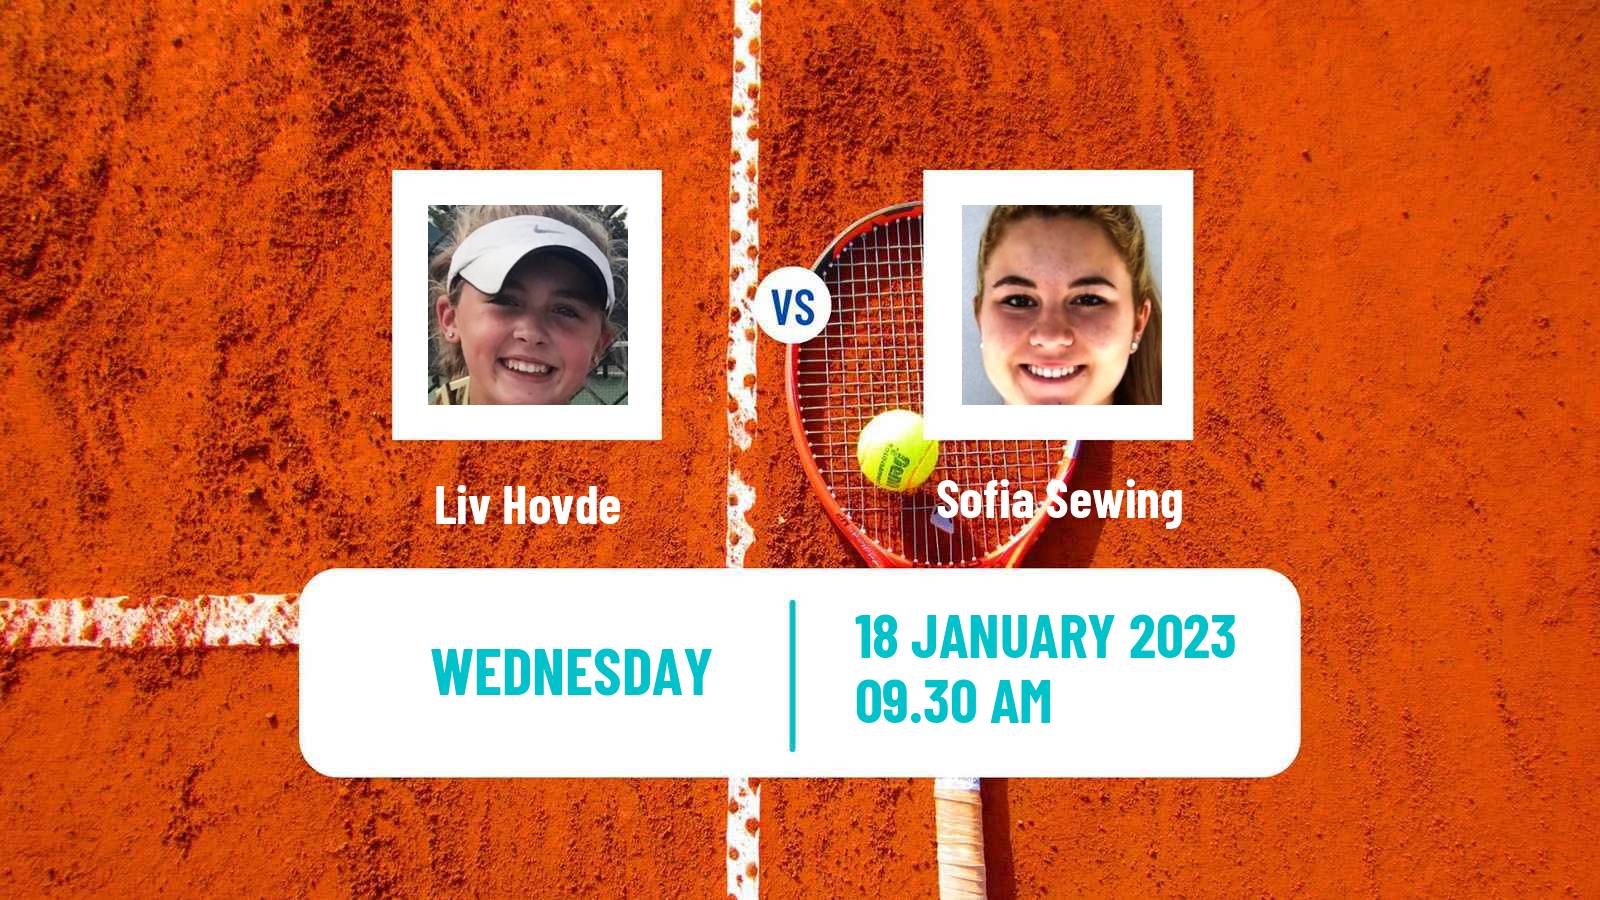 Tennis ITF Tournaments Liv Hovde - Sofia Sewing